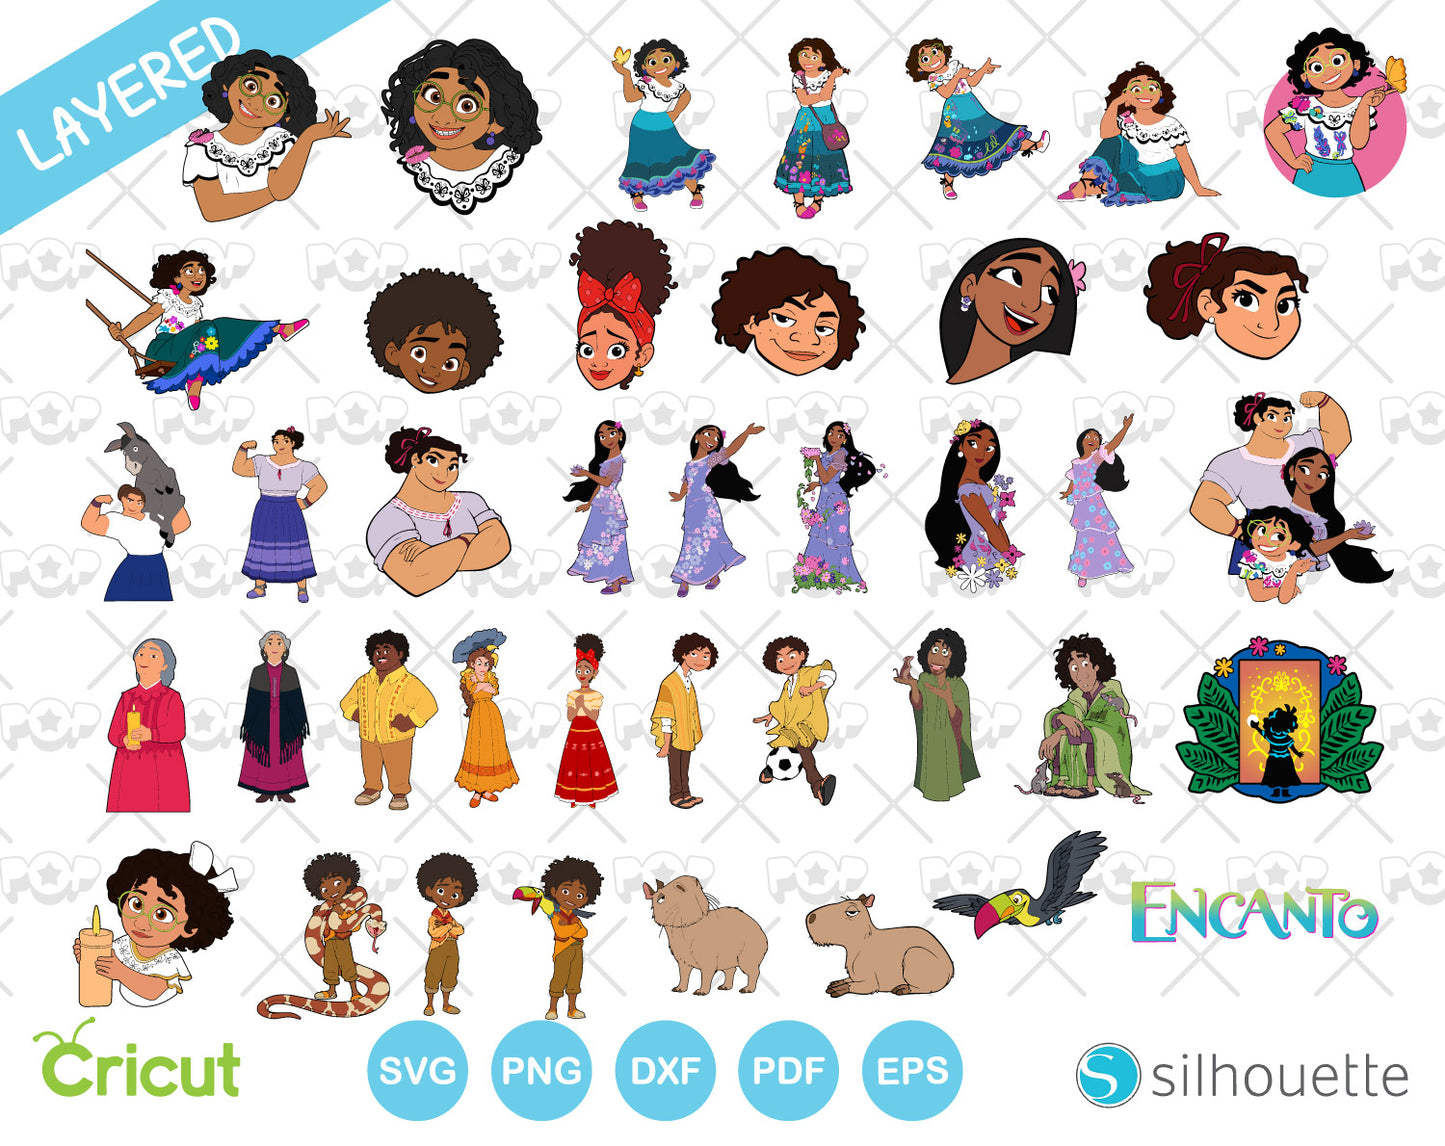 Disney Encanto 150 cliparts bundle, SVG cut files for Cricut / Silhouette, instant download